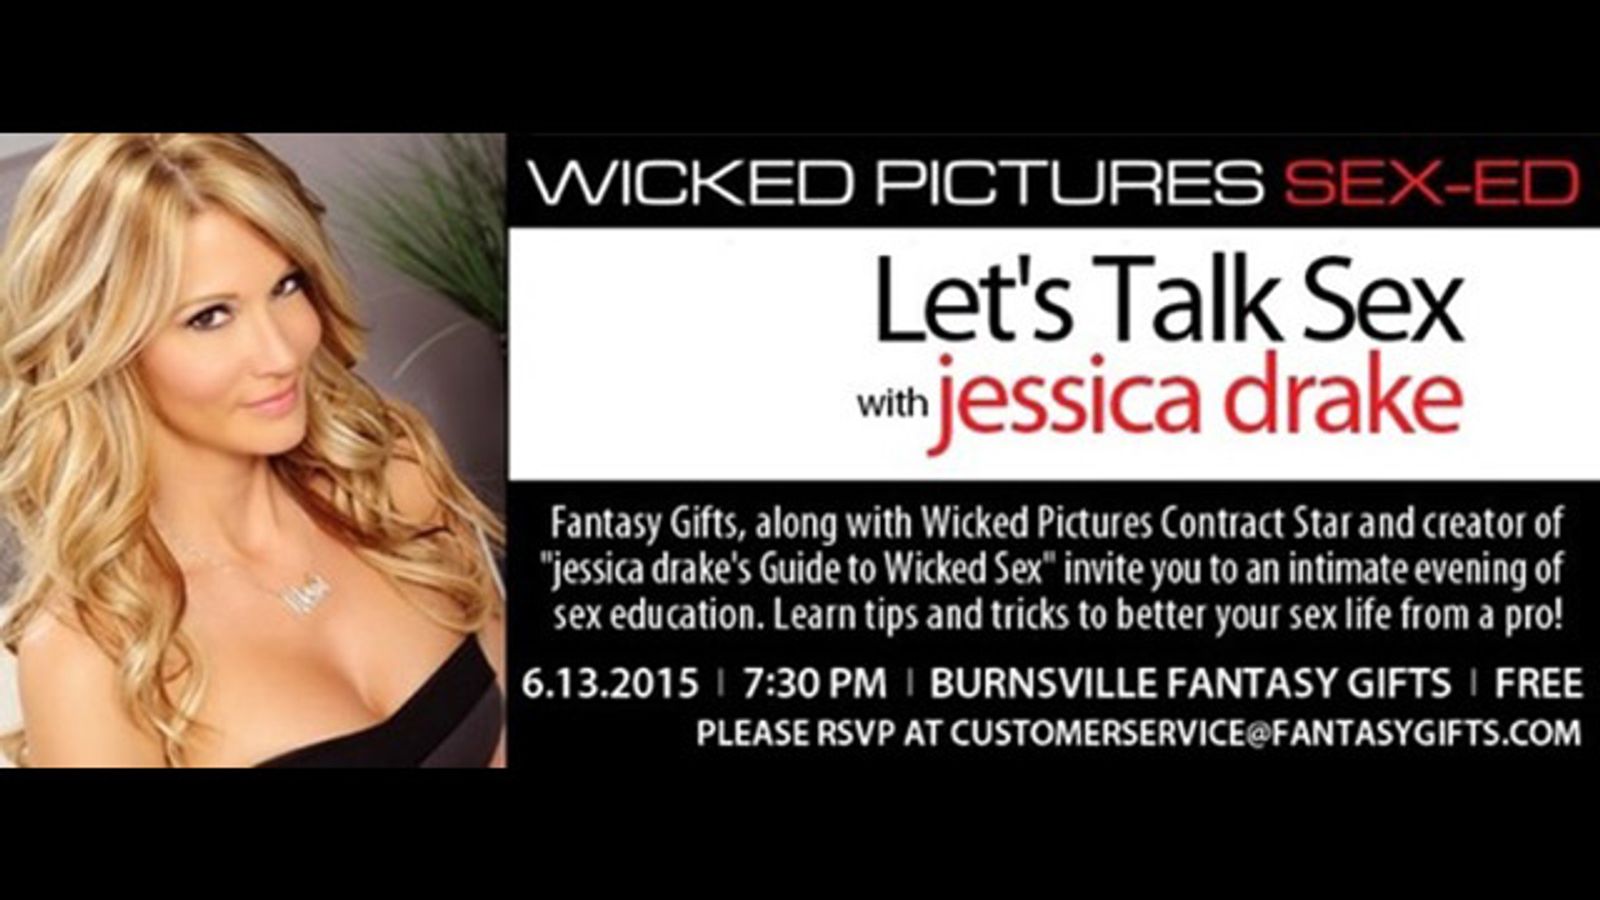 Jessica Drake to Host Sex Ed Seminar at Fantasy Gifts